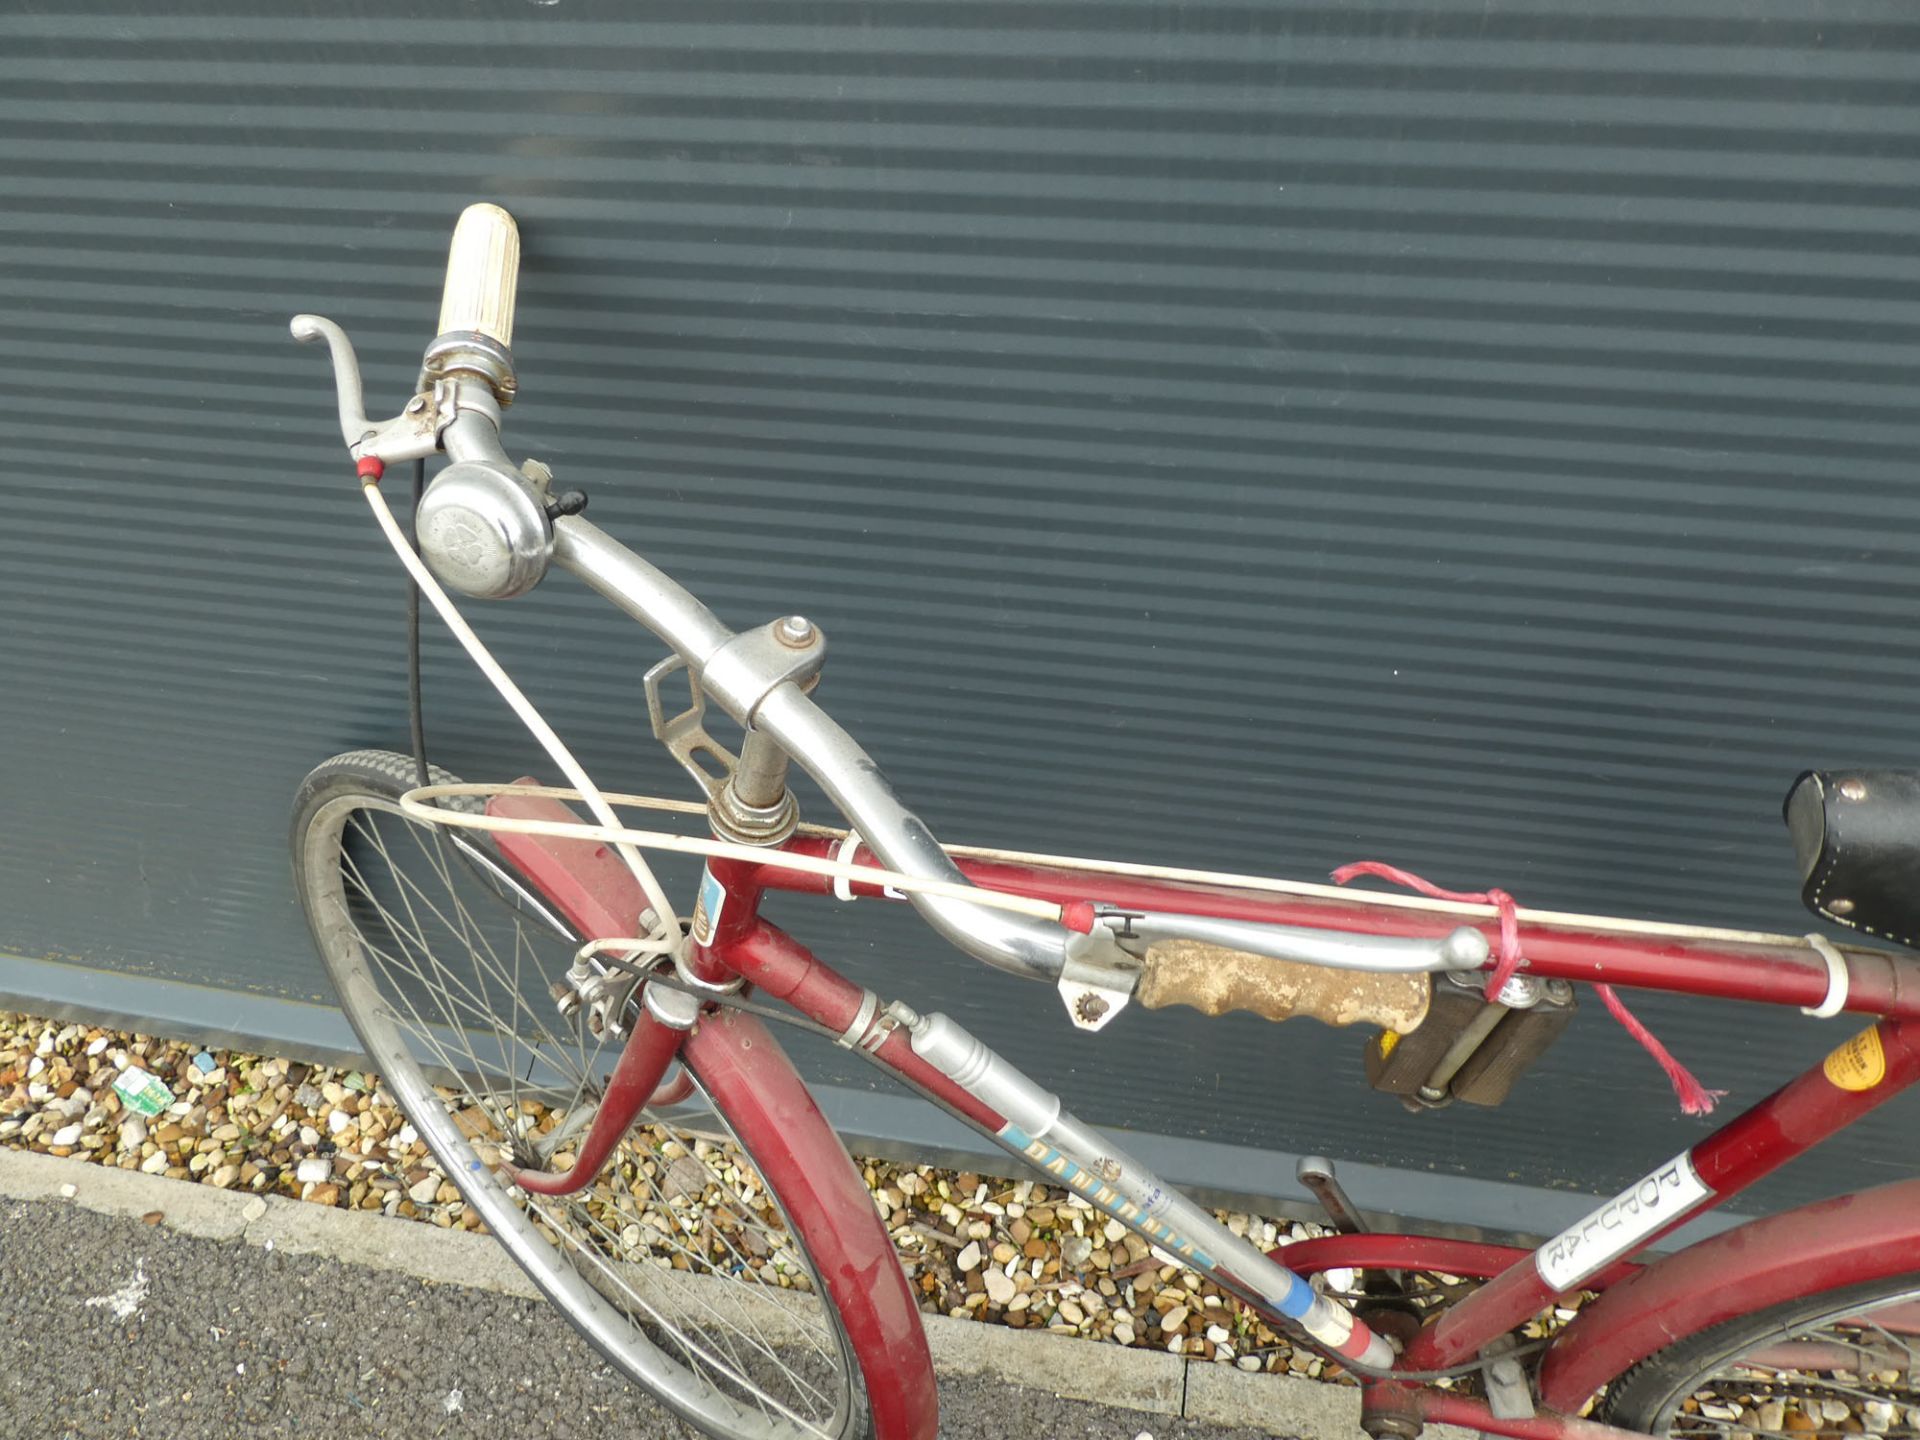 Popular bike in burgundy - Image 2 of 2